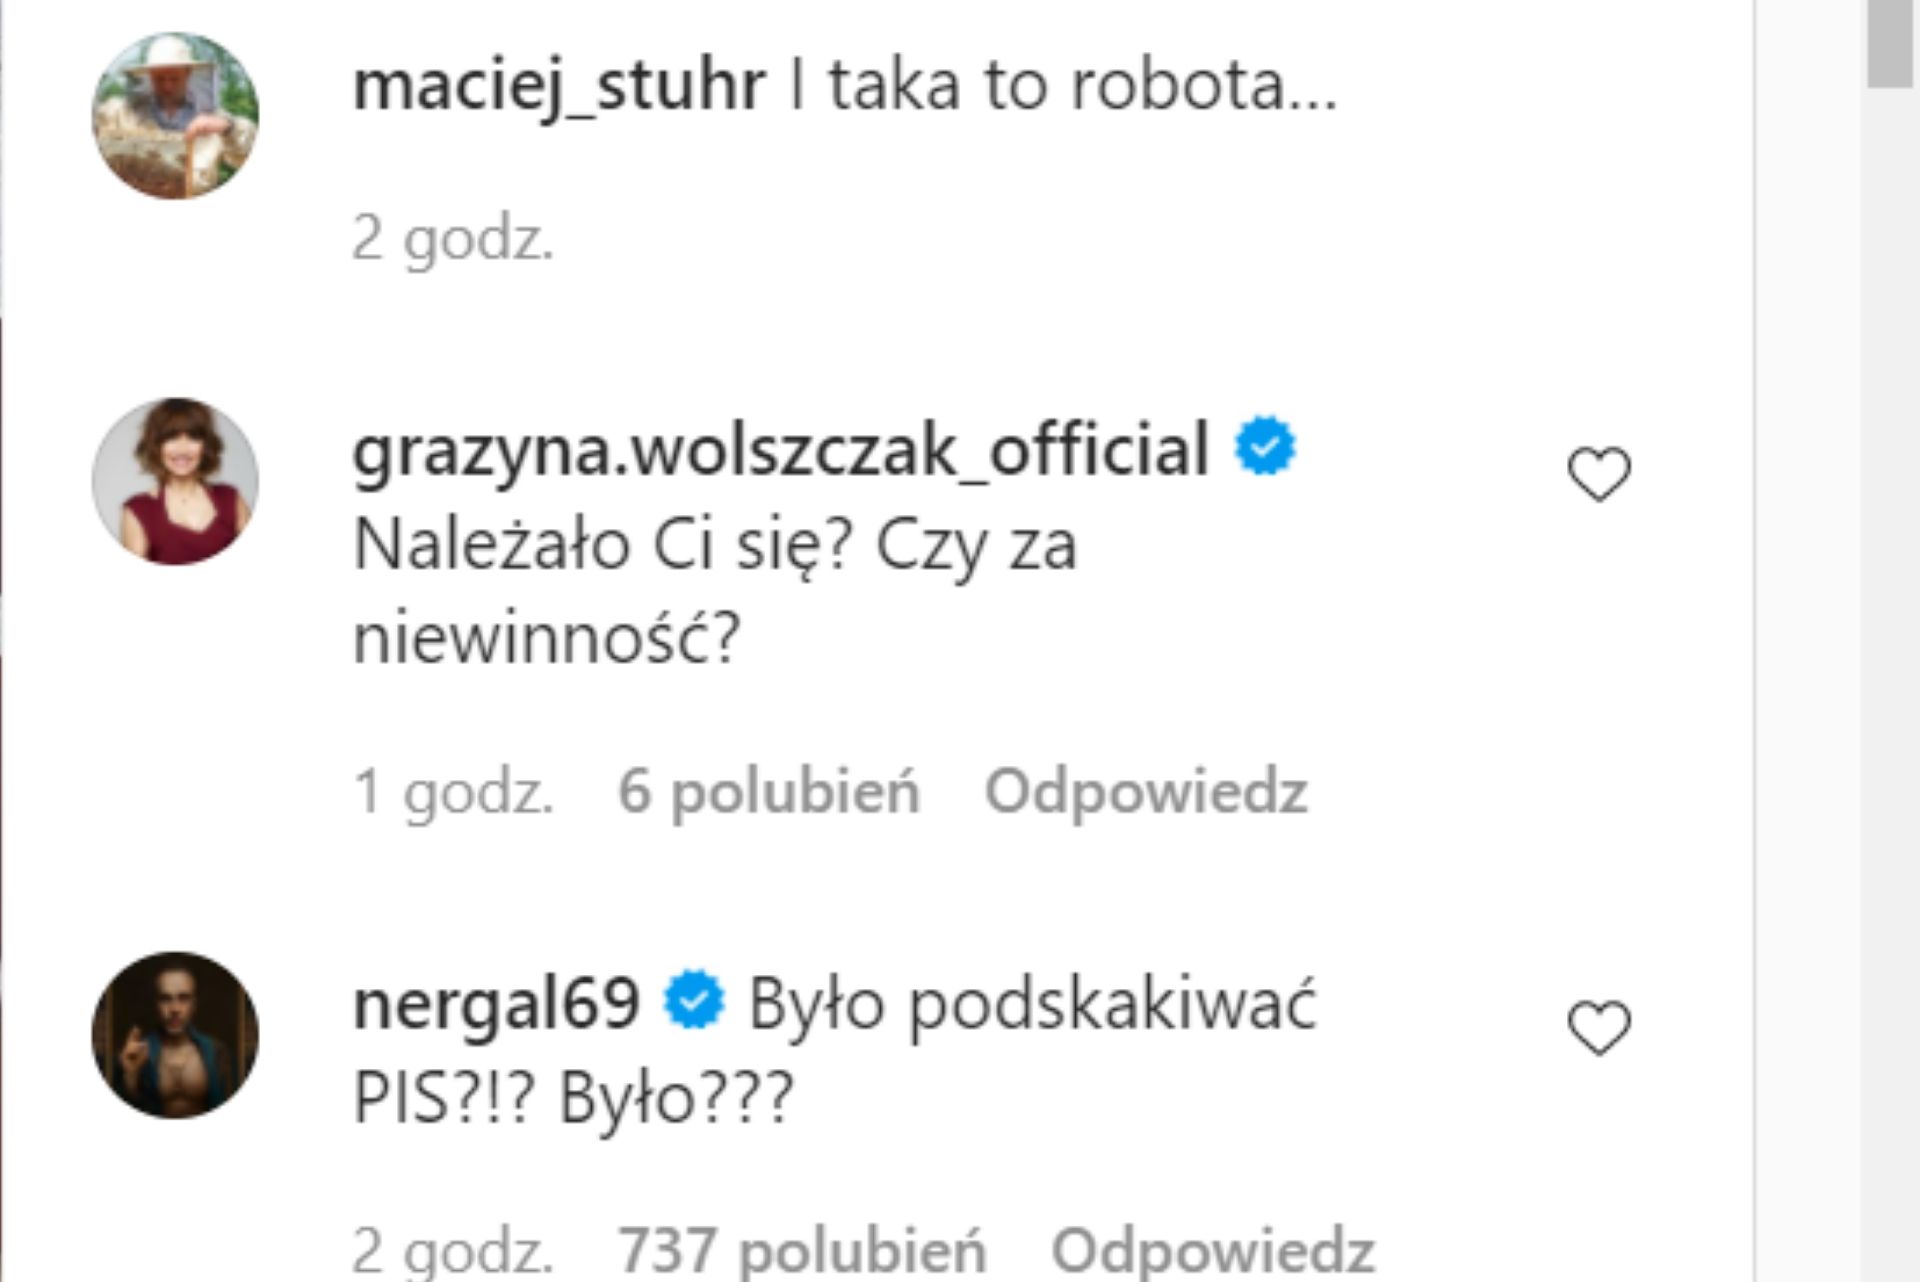 Nergal kom IG